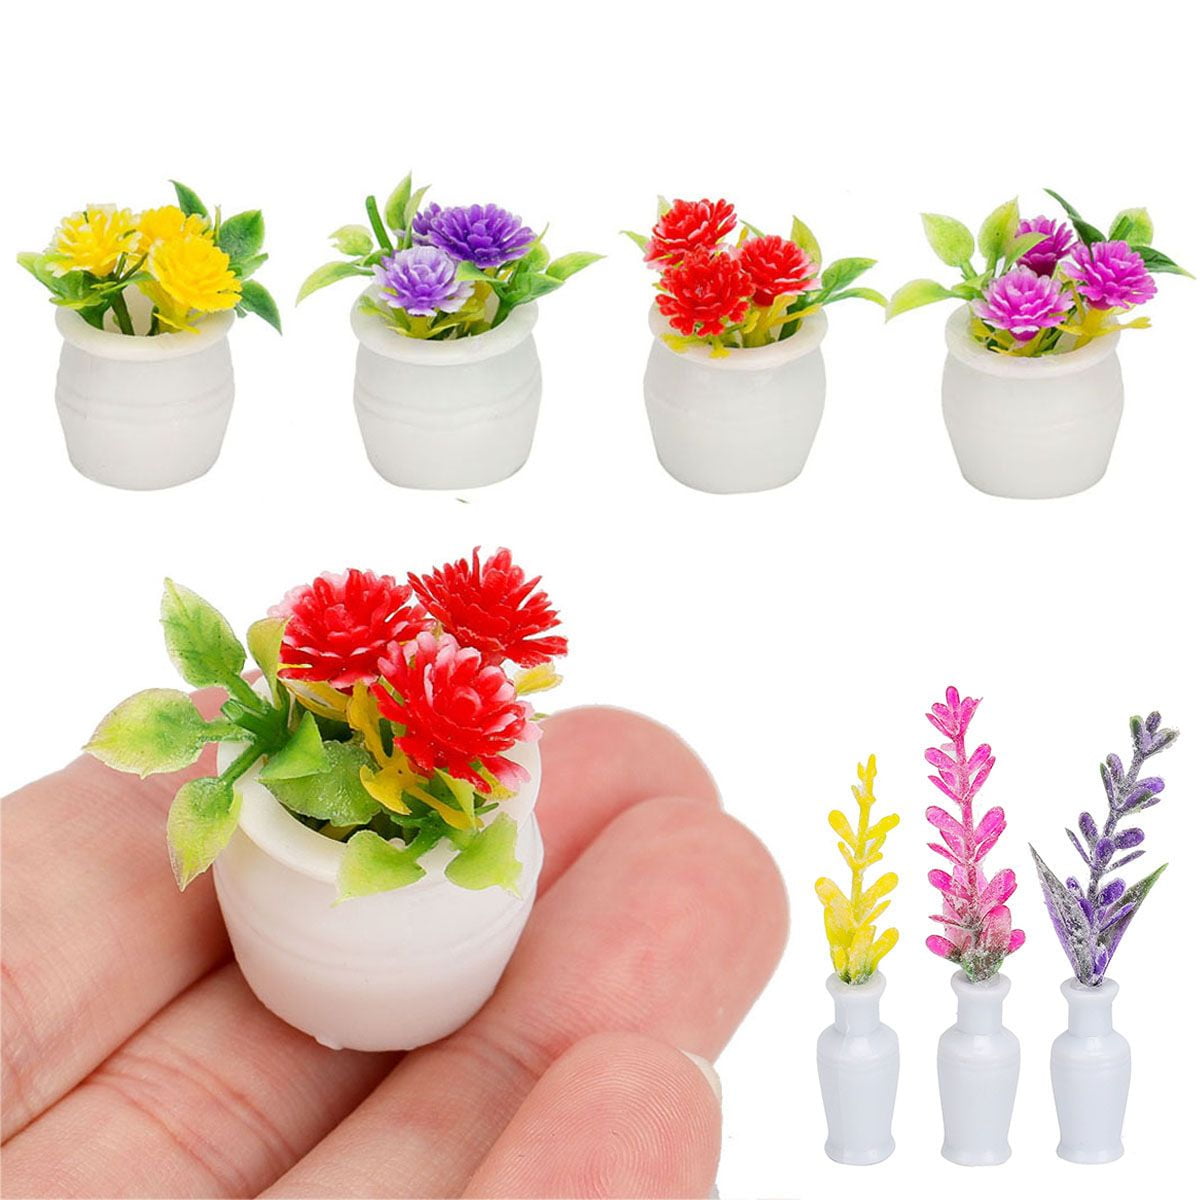 Set 8 Lovely Mixs Plant Flower Dollhouse Miniature Home Decoration 